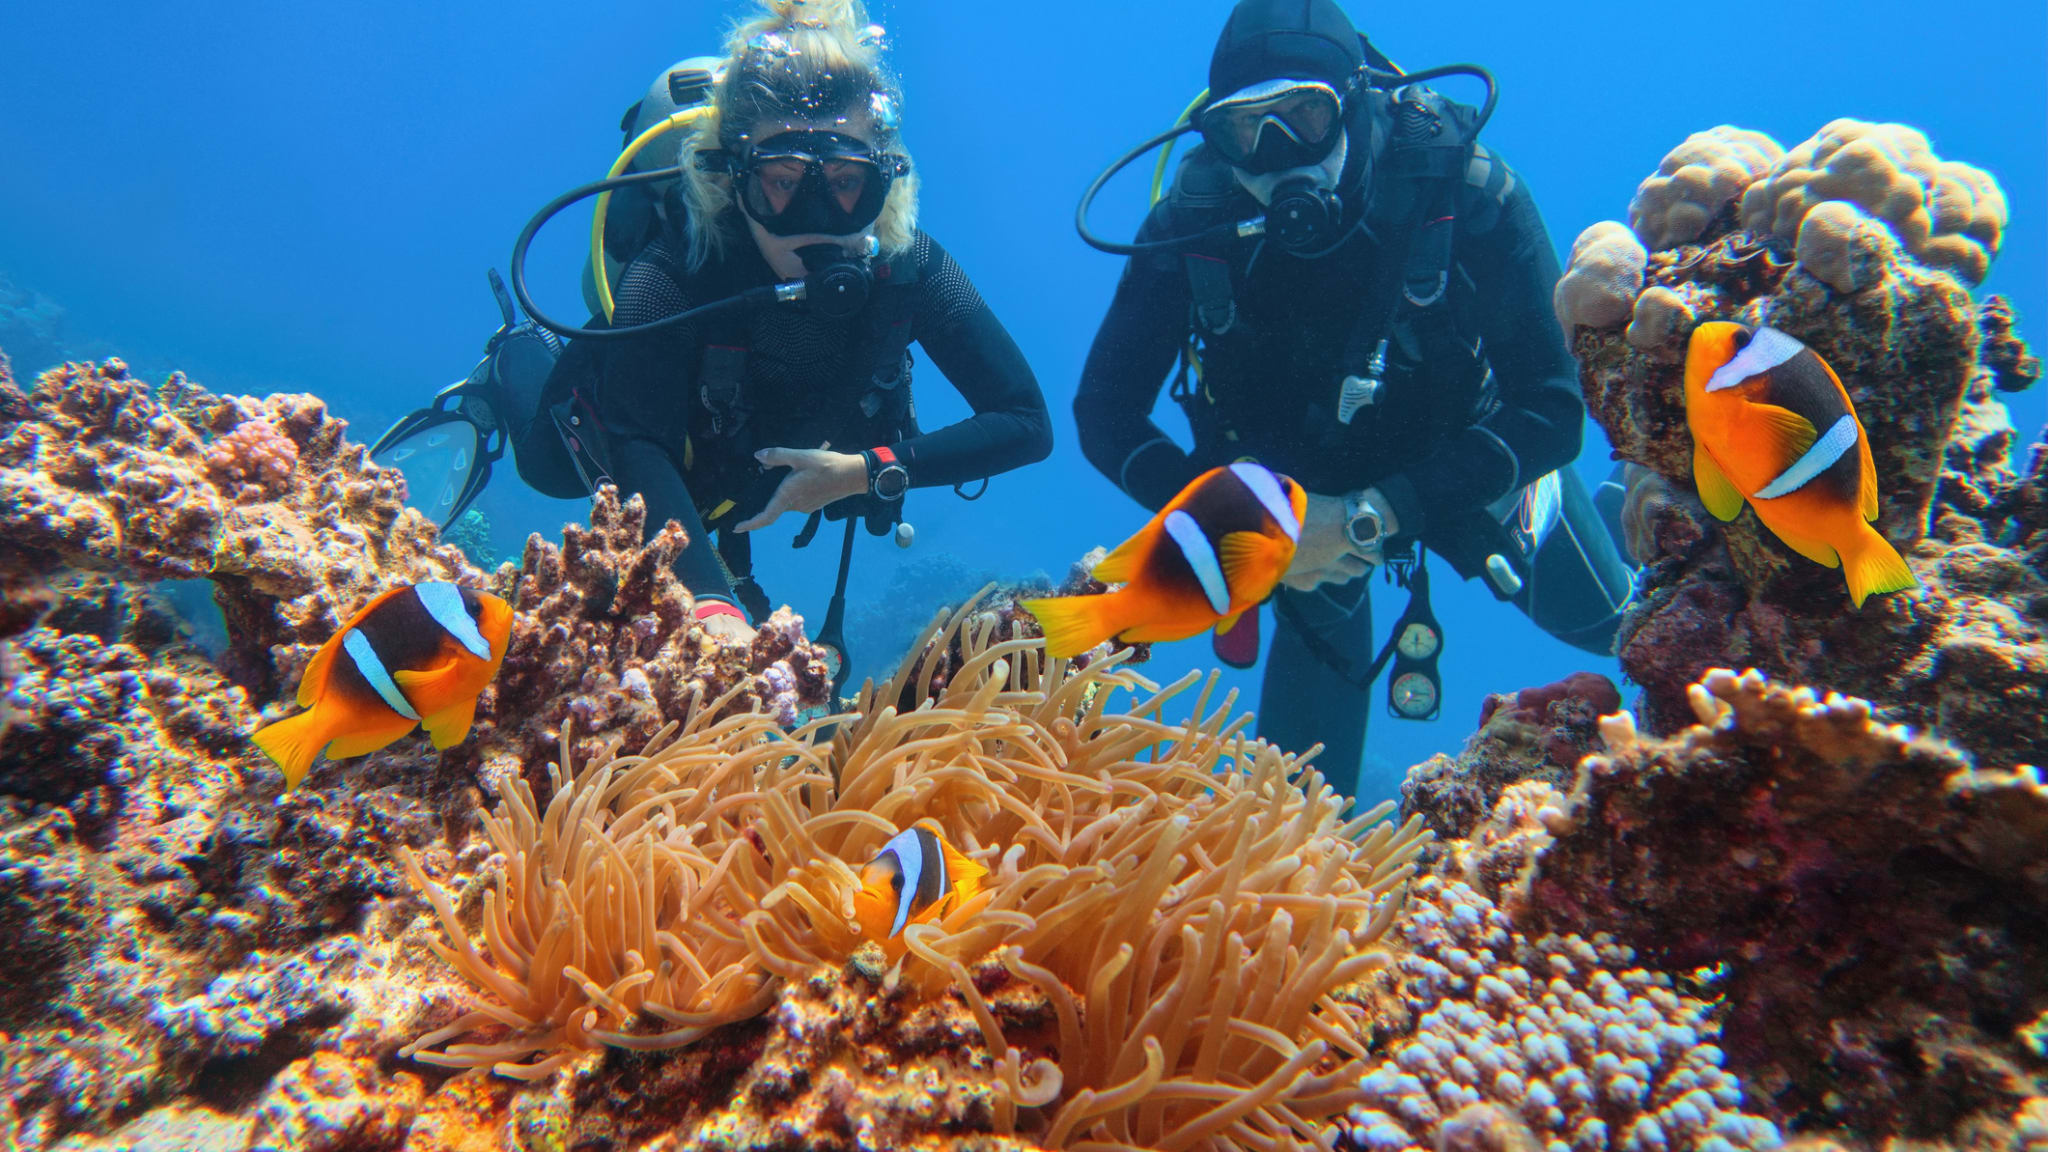 Taucher in der Nähe von schönen Korallenriffen beobachten Seeanemone und Familie von Zweibinden-Anemonenfischen © iStock.com/Tunatura